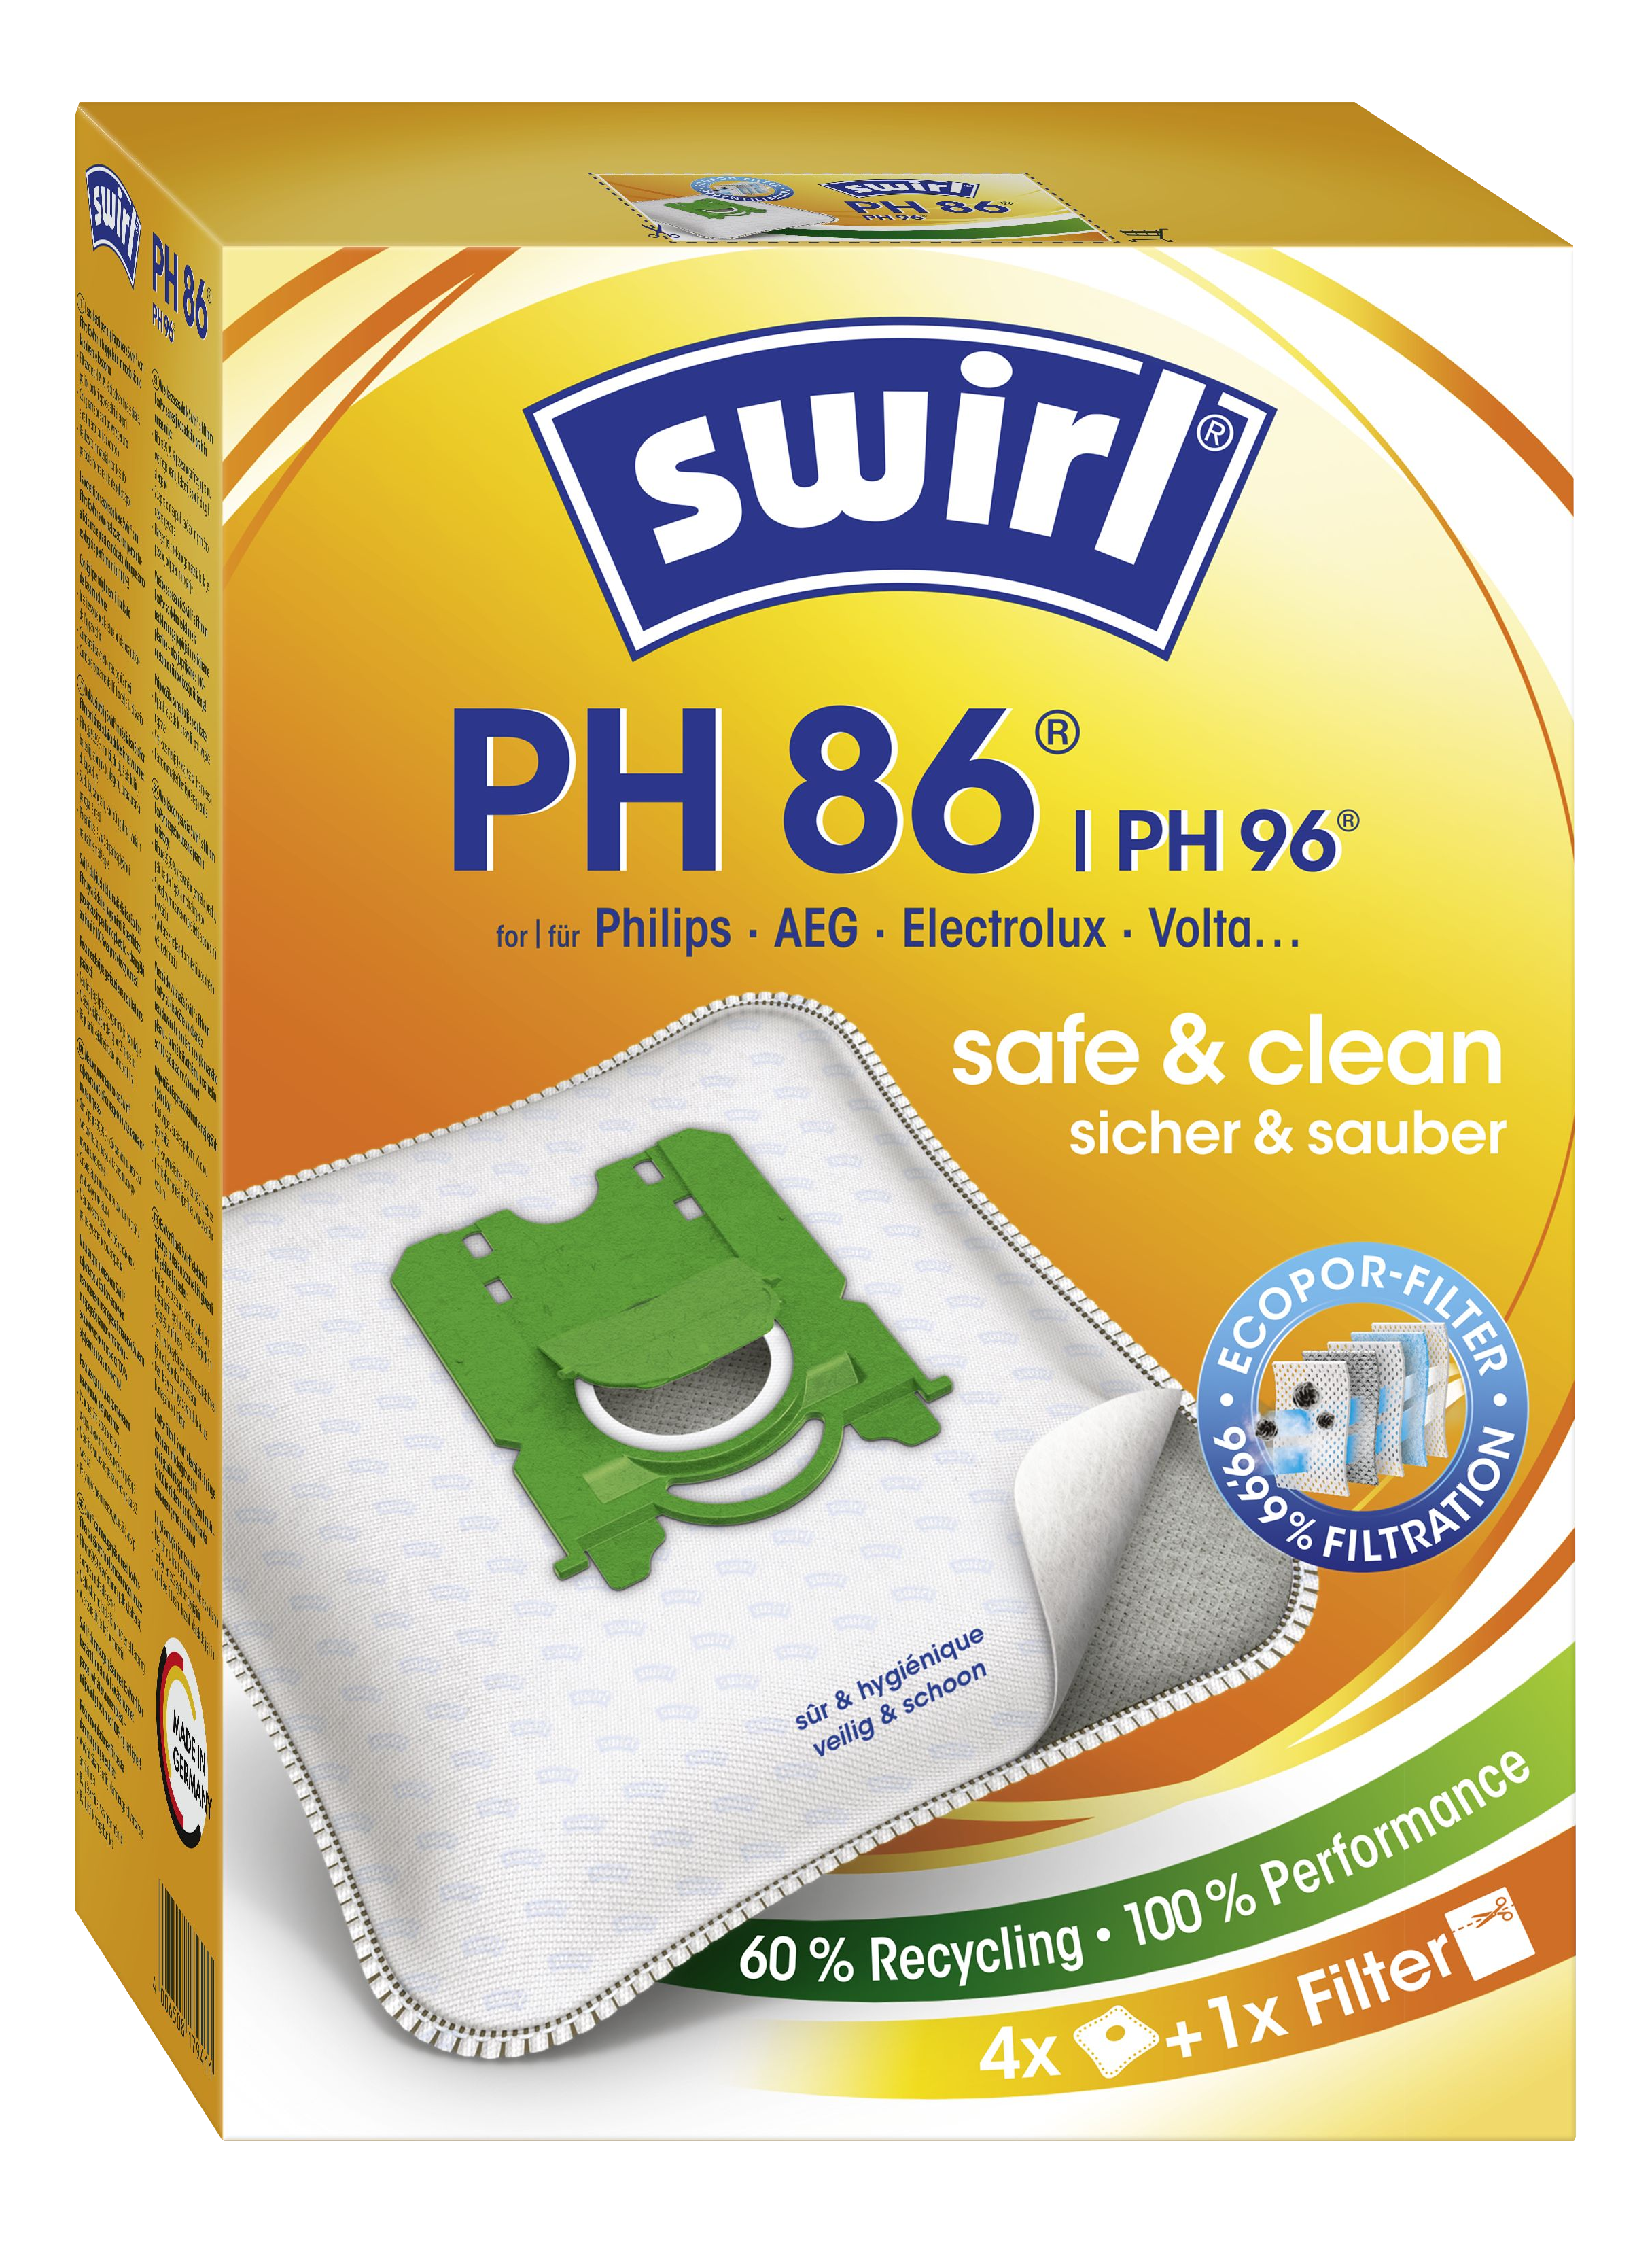 SWIRL PH86 - Sacchetto di polvere